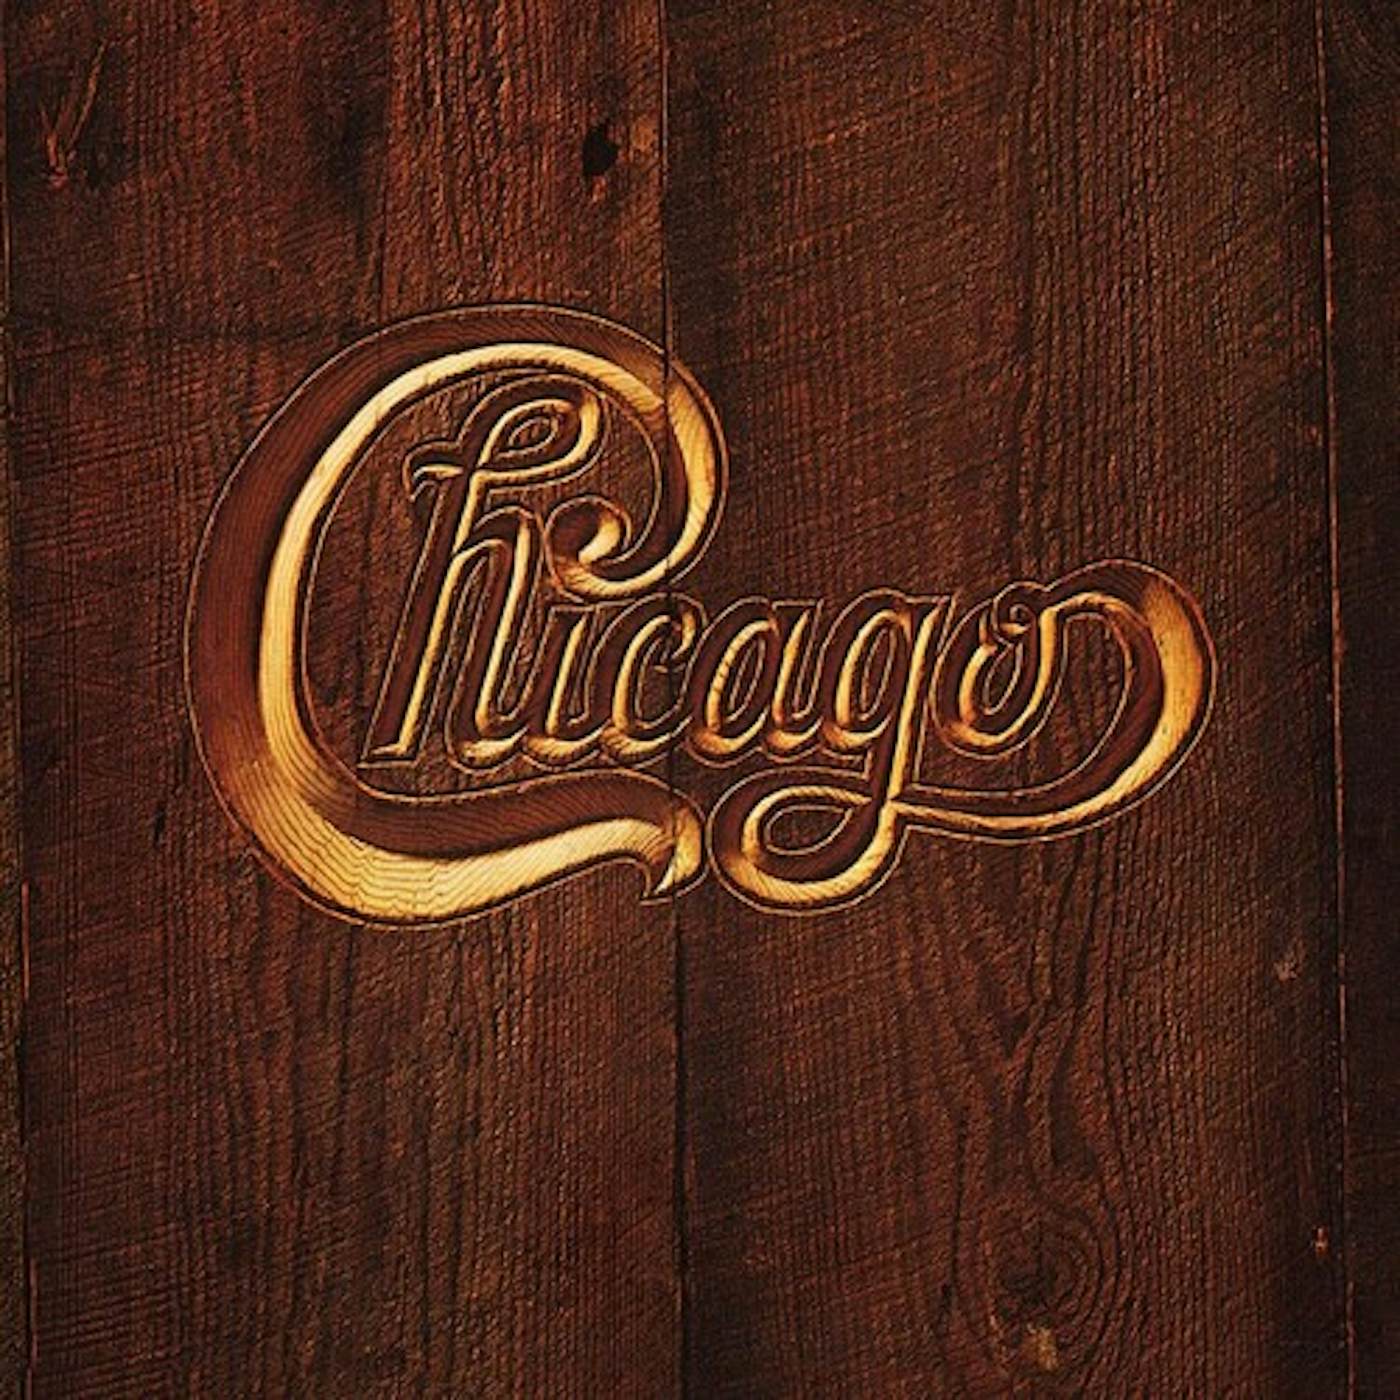 Chicago V Vinyl Record